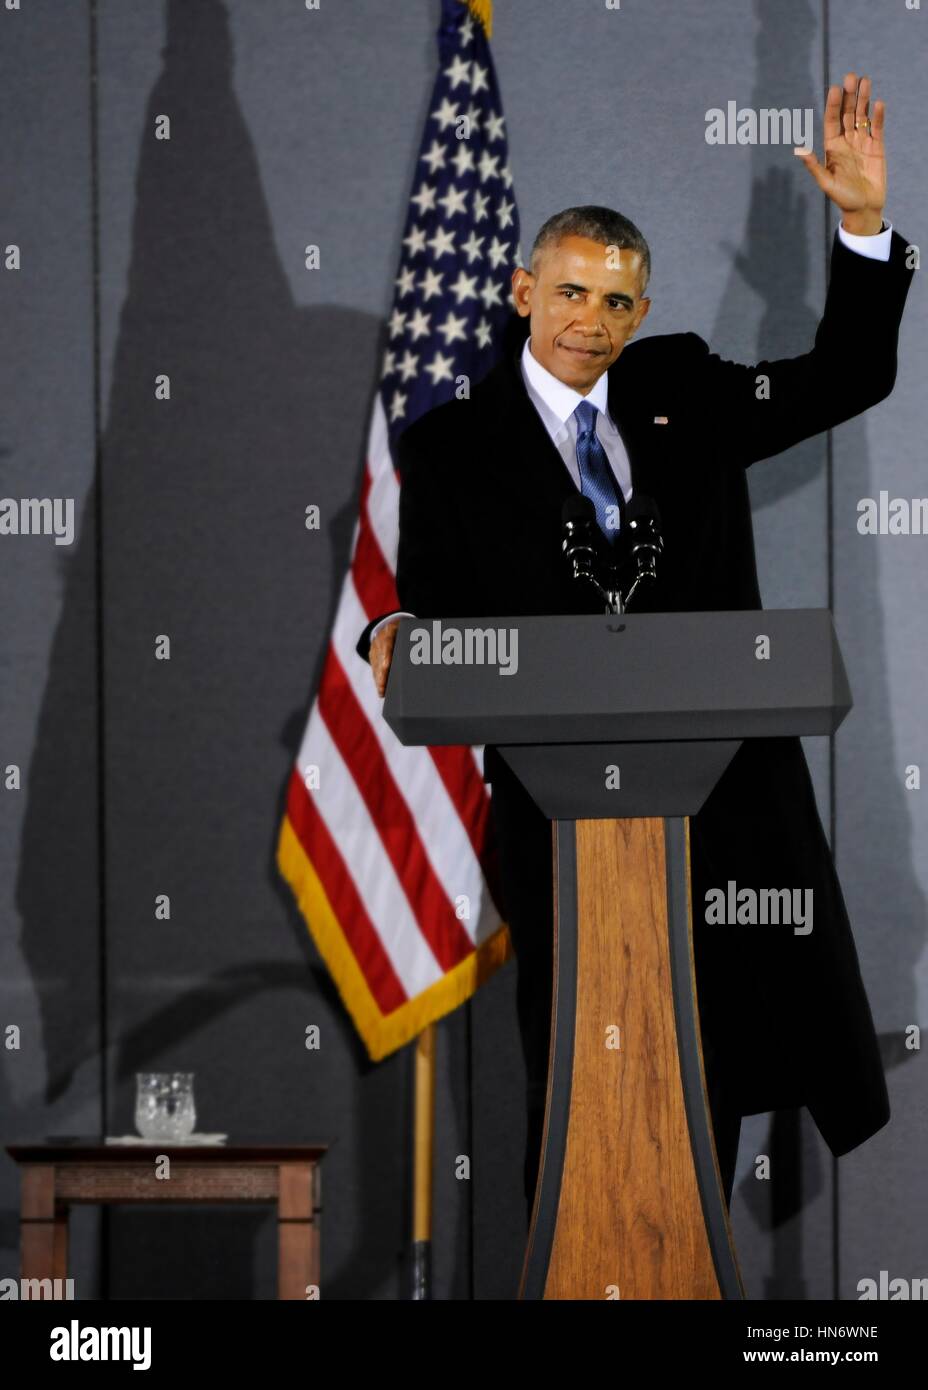 L'ancien Président des États-Unis, Barack Obama, dit au revoir à la foule après son discours d'adieu à Joint Base Andrews le 20 janvier 2017 dans le Maryland. (Photo par Stephanie Morris /US Air Force par Planetpix) Banque D'Images